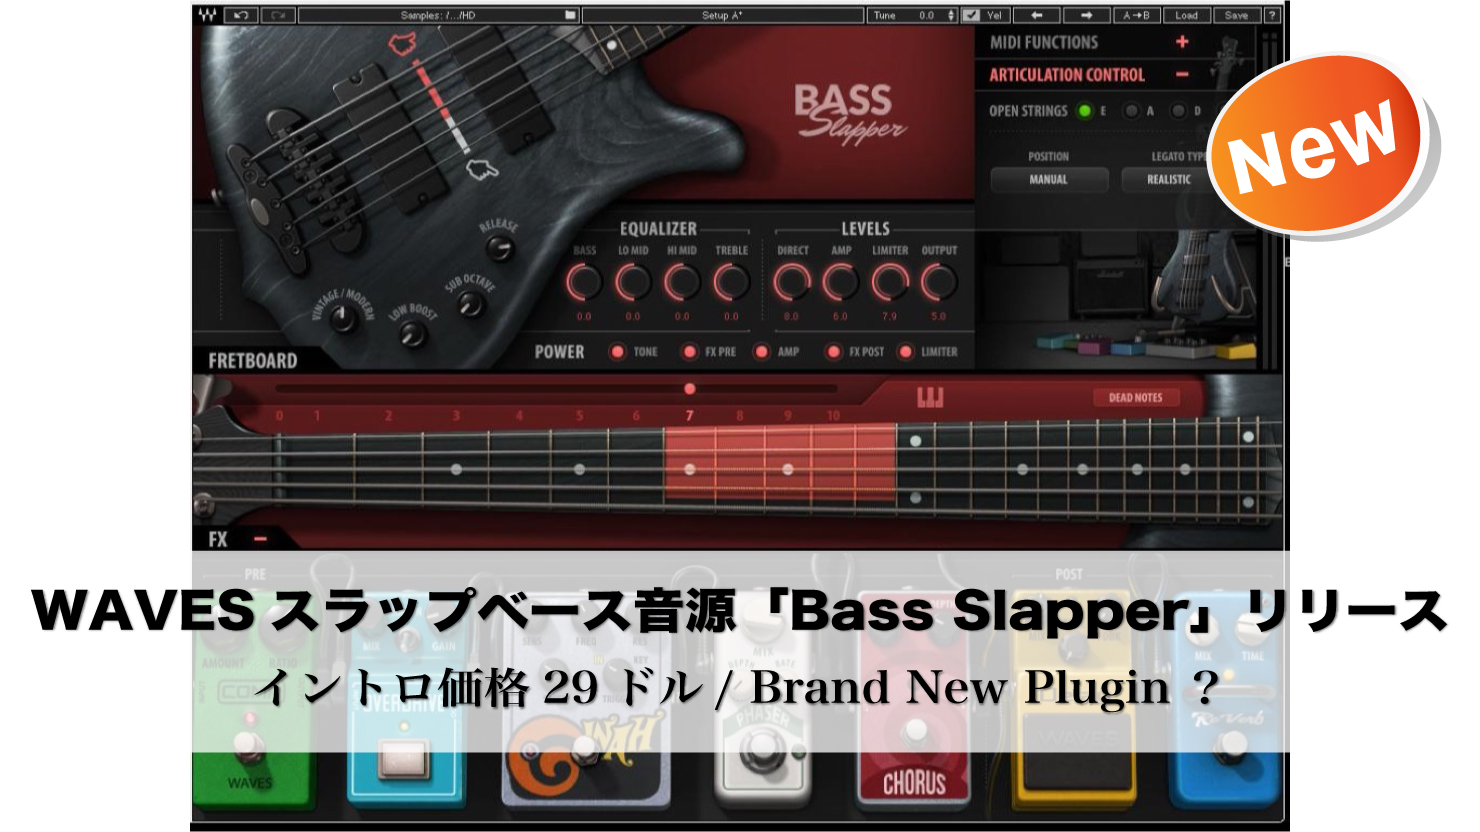 新着 Waves スラップベース音源 Bass Slapper をリリース プレゼント企画の製品はこれなのか